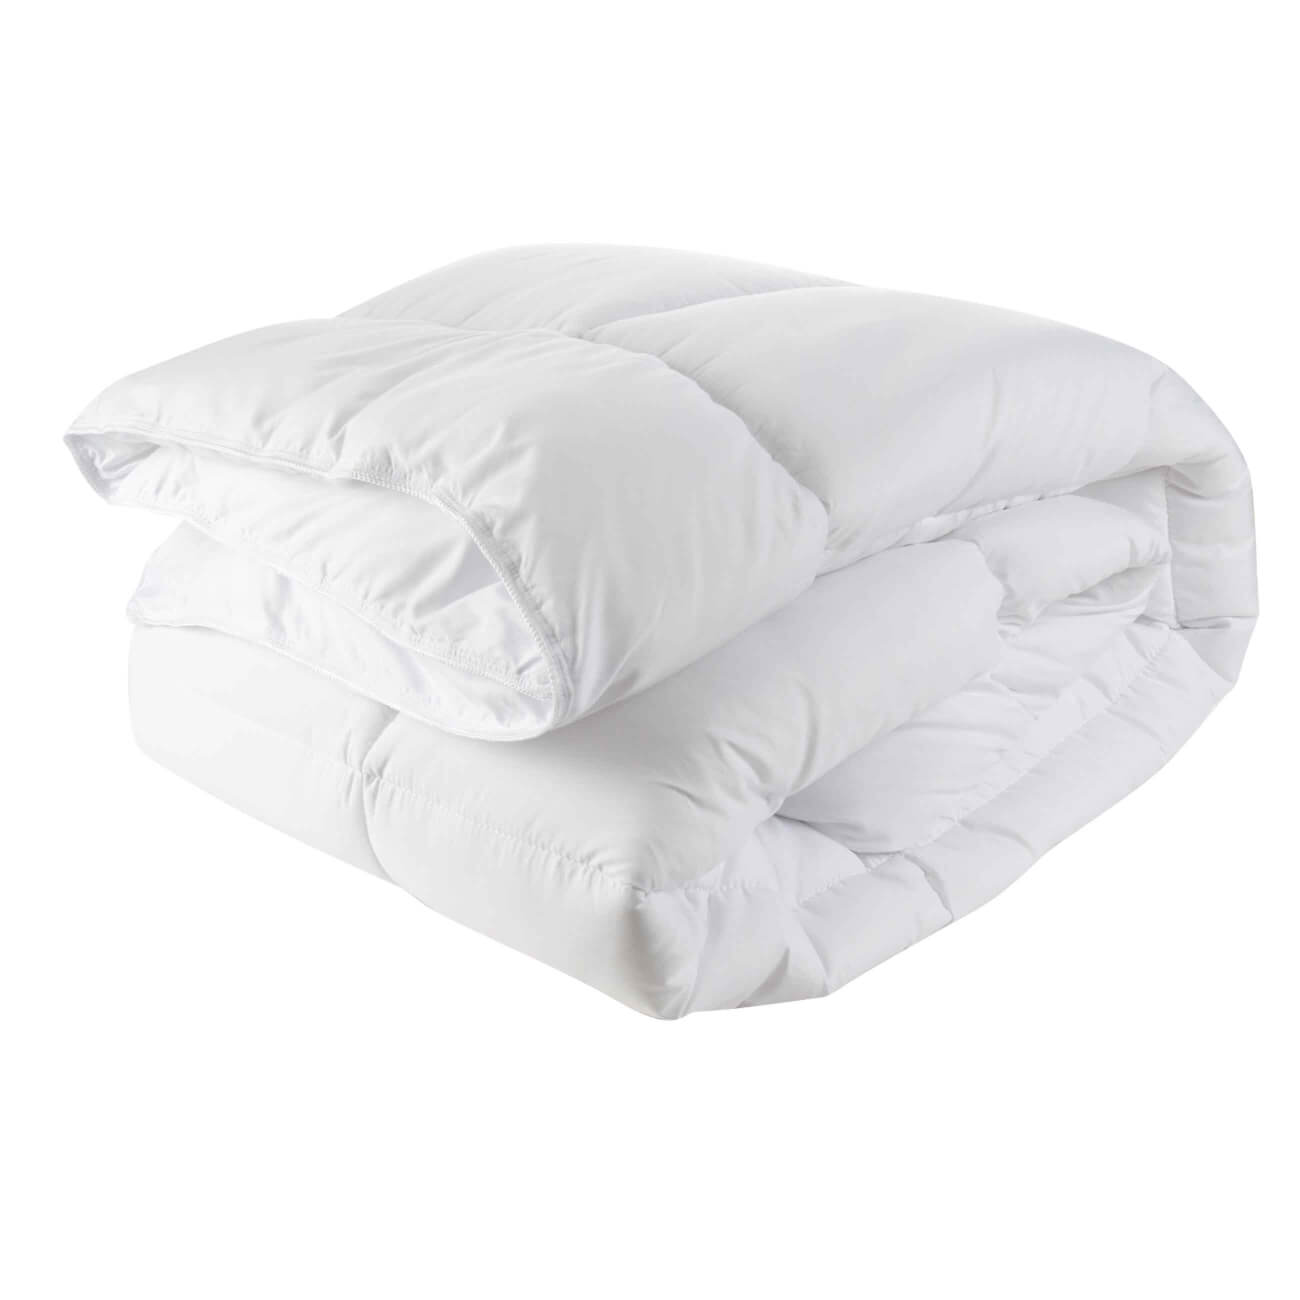 Одеяло, 140х200 см, микрофибра, Simply soft одеяло 140х200 см микрофибра simply soft